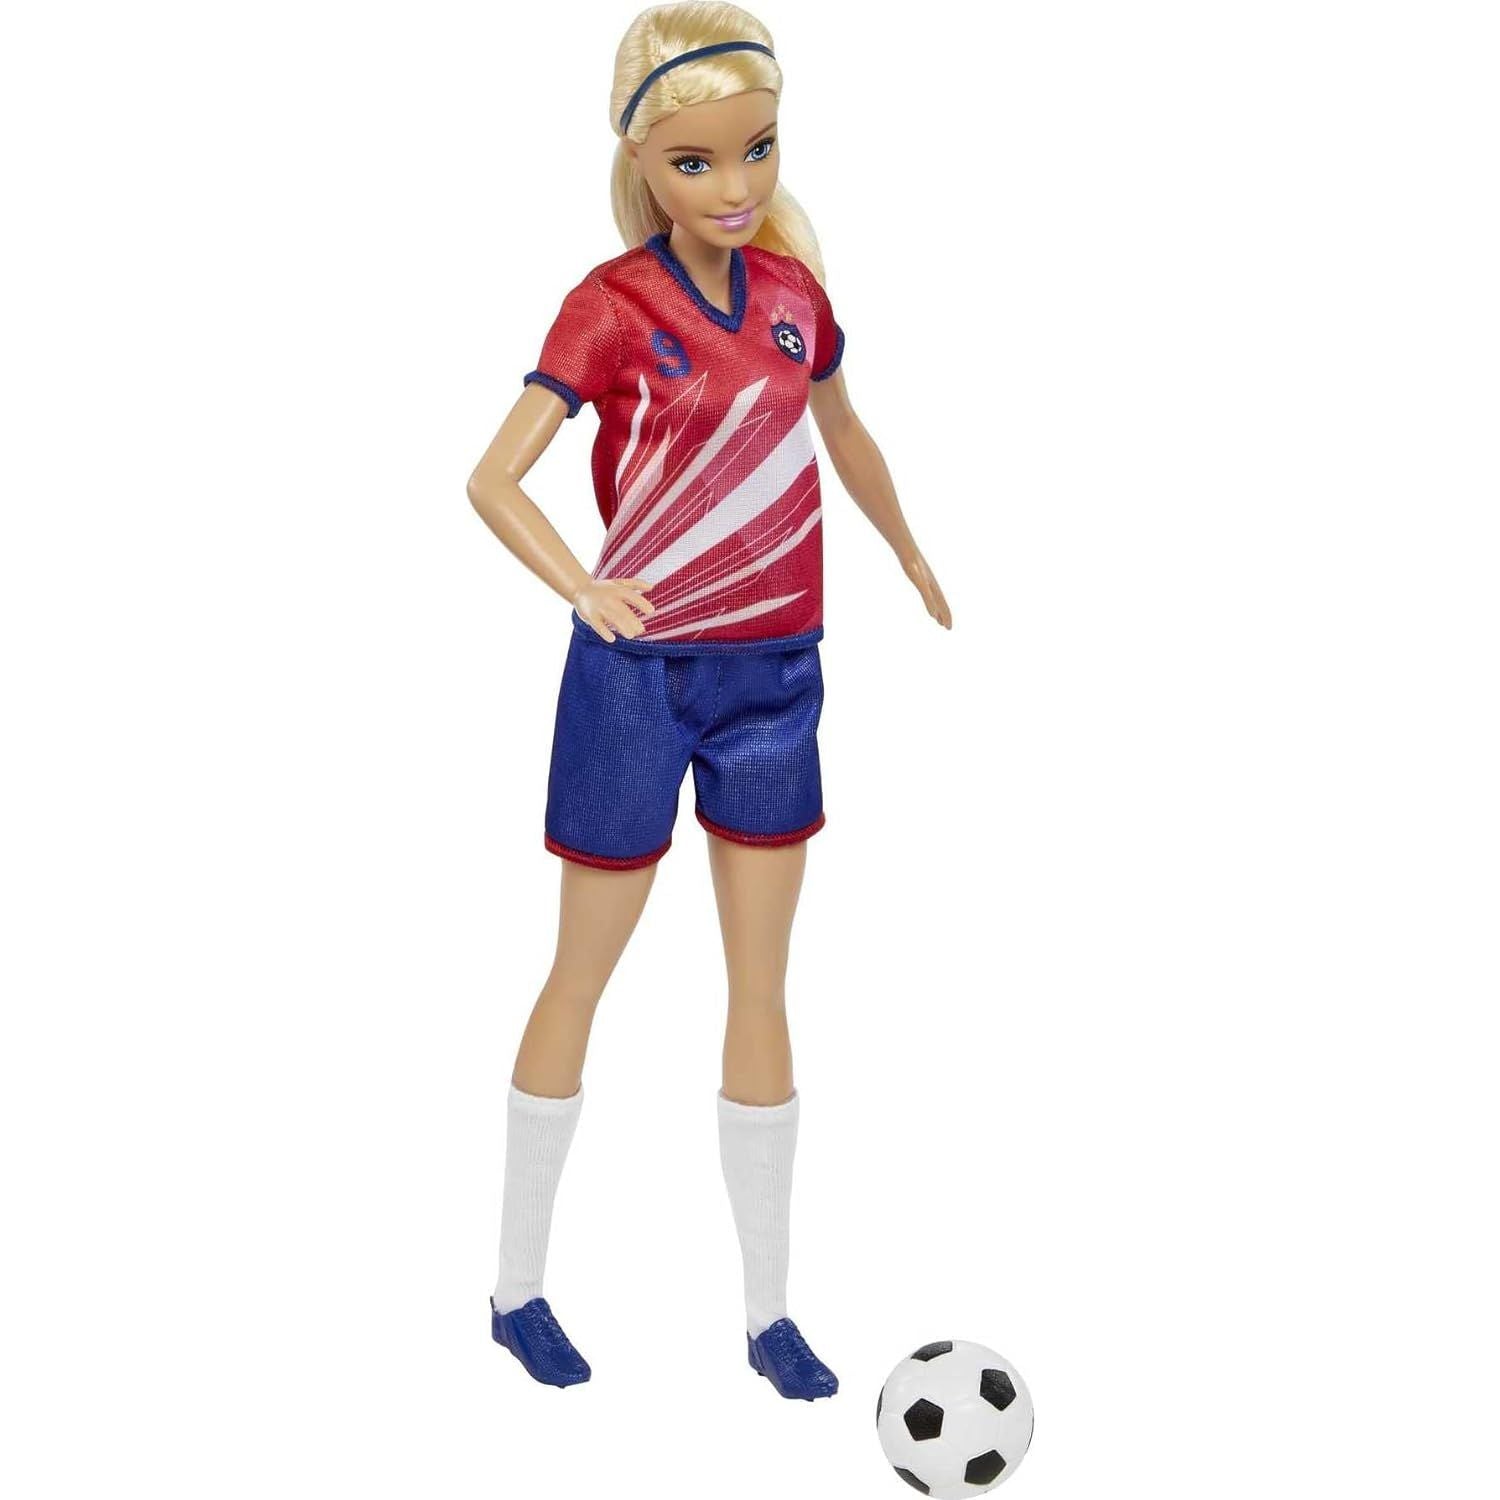 Barbie Footballer Doll Barbie